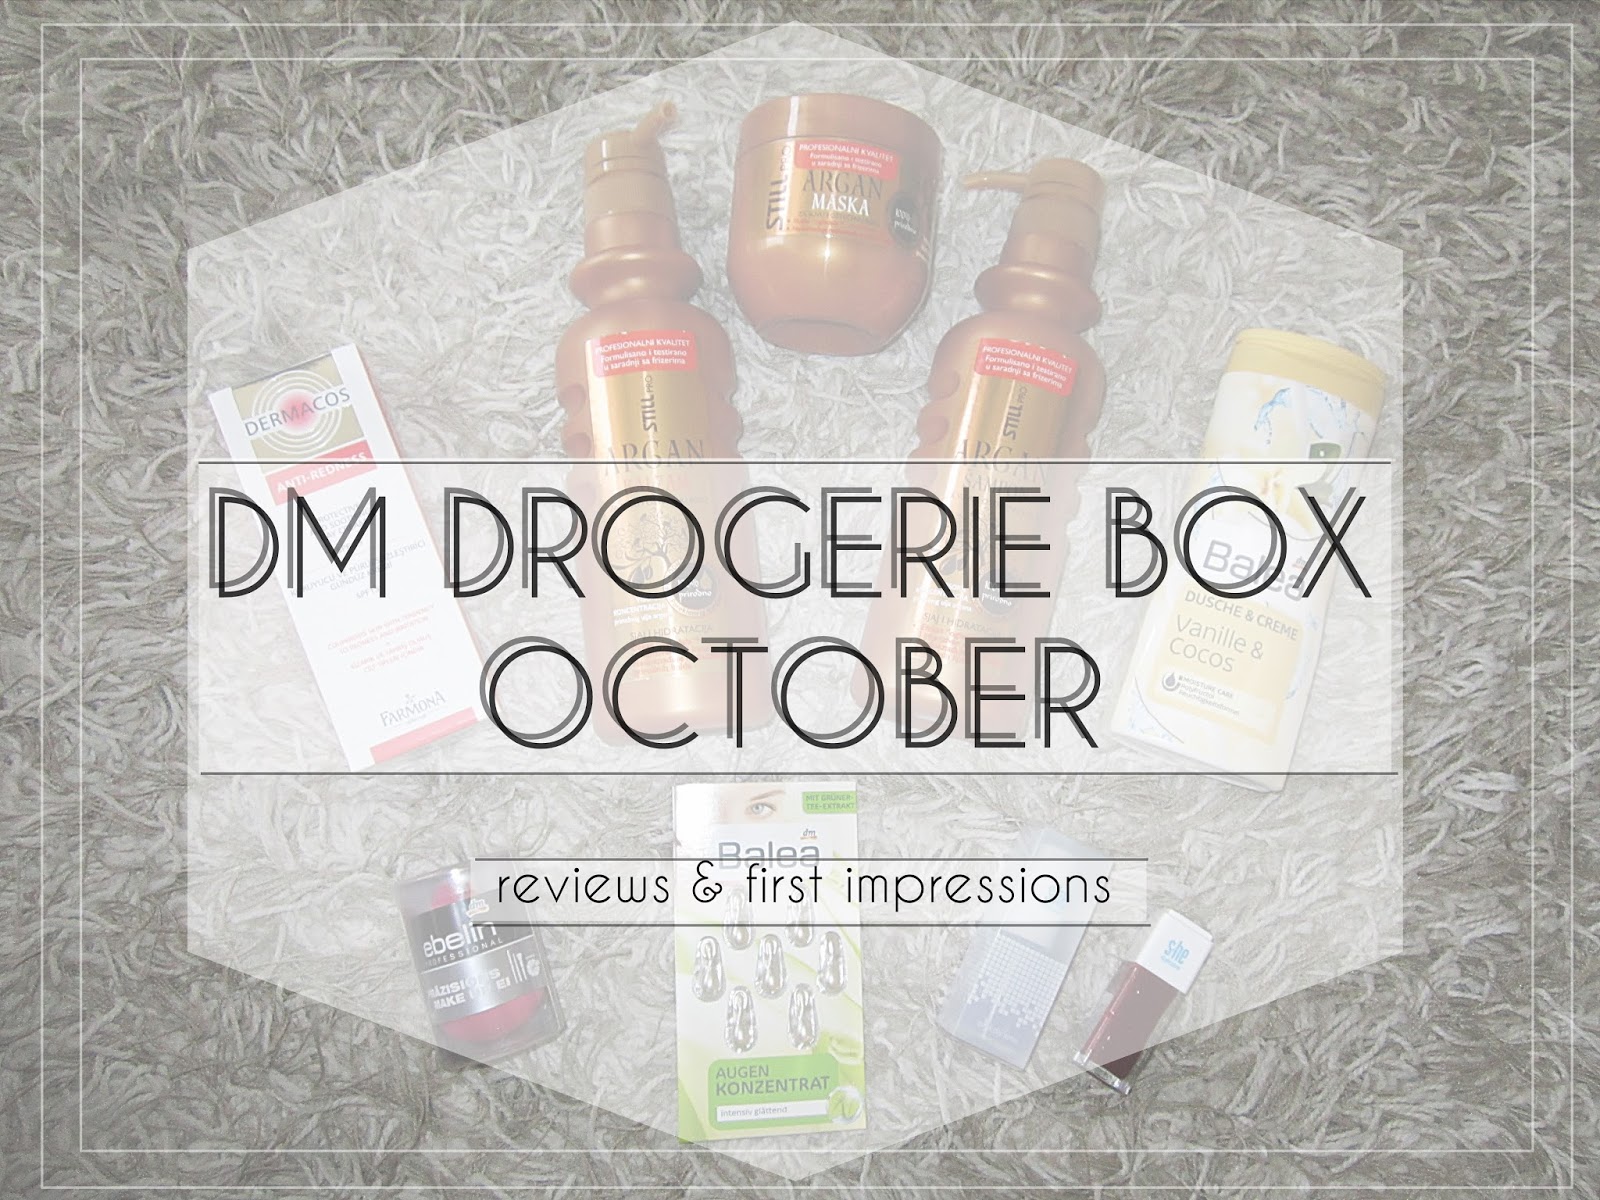 The Glam Monster Dm Drogerie Box October 2015